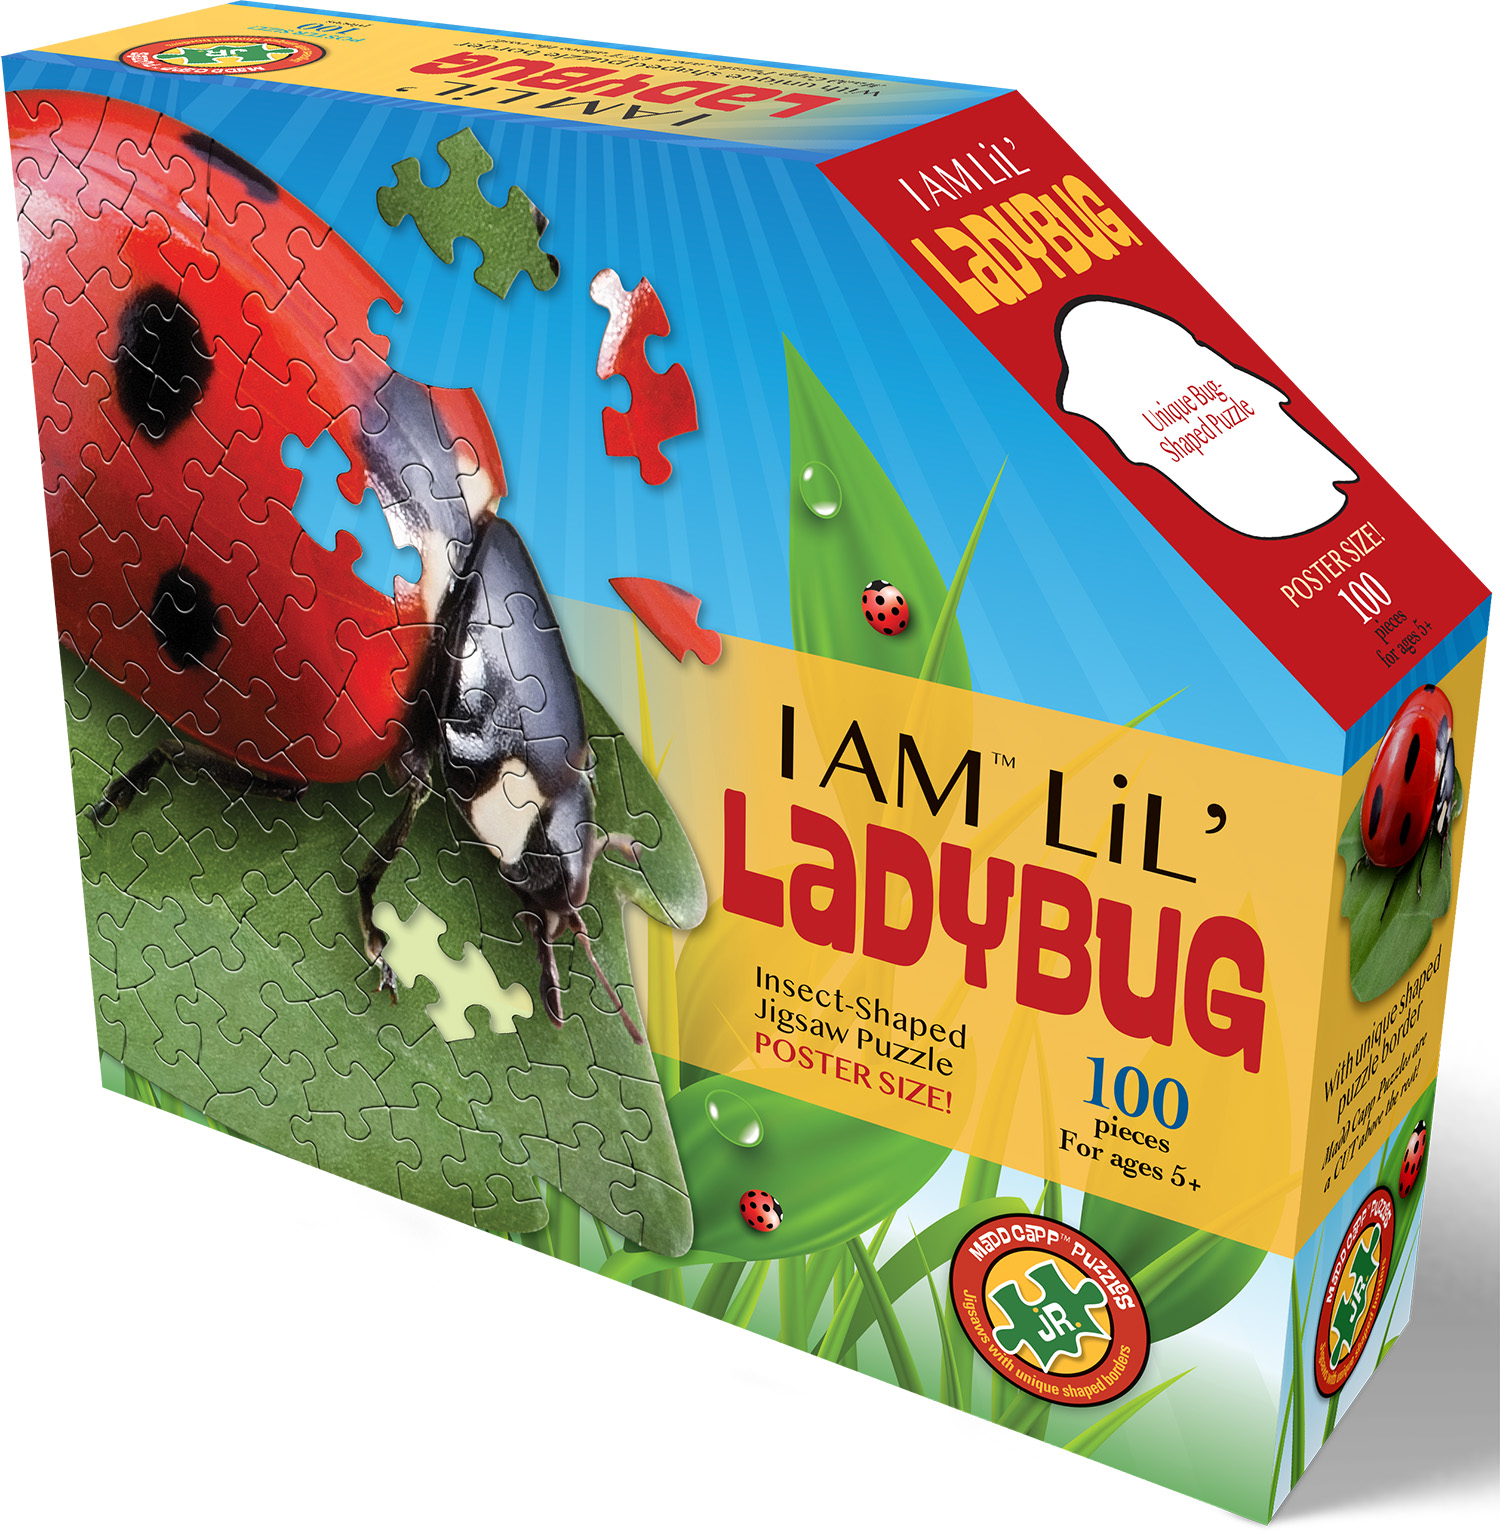 I Am Lil' Lady Bug